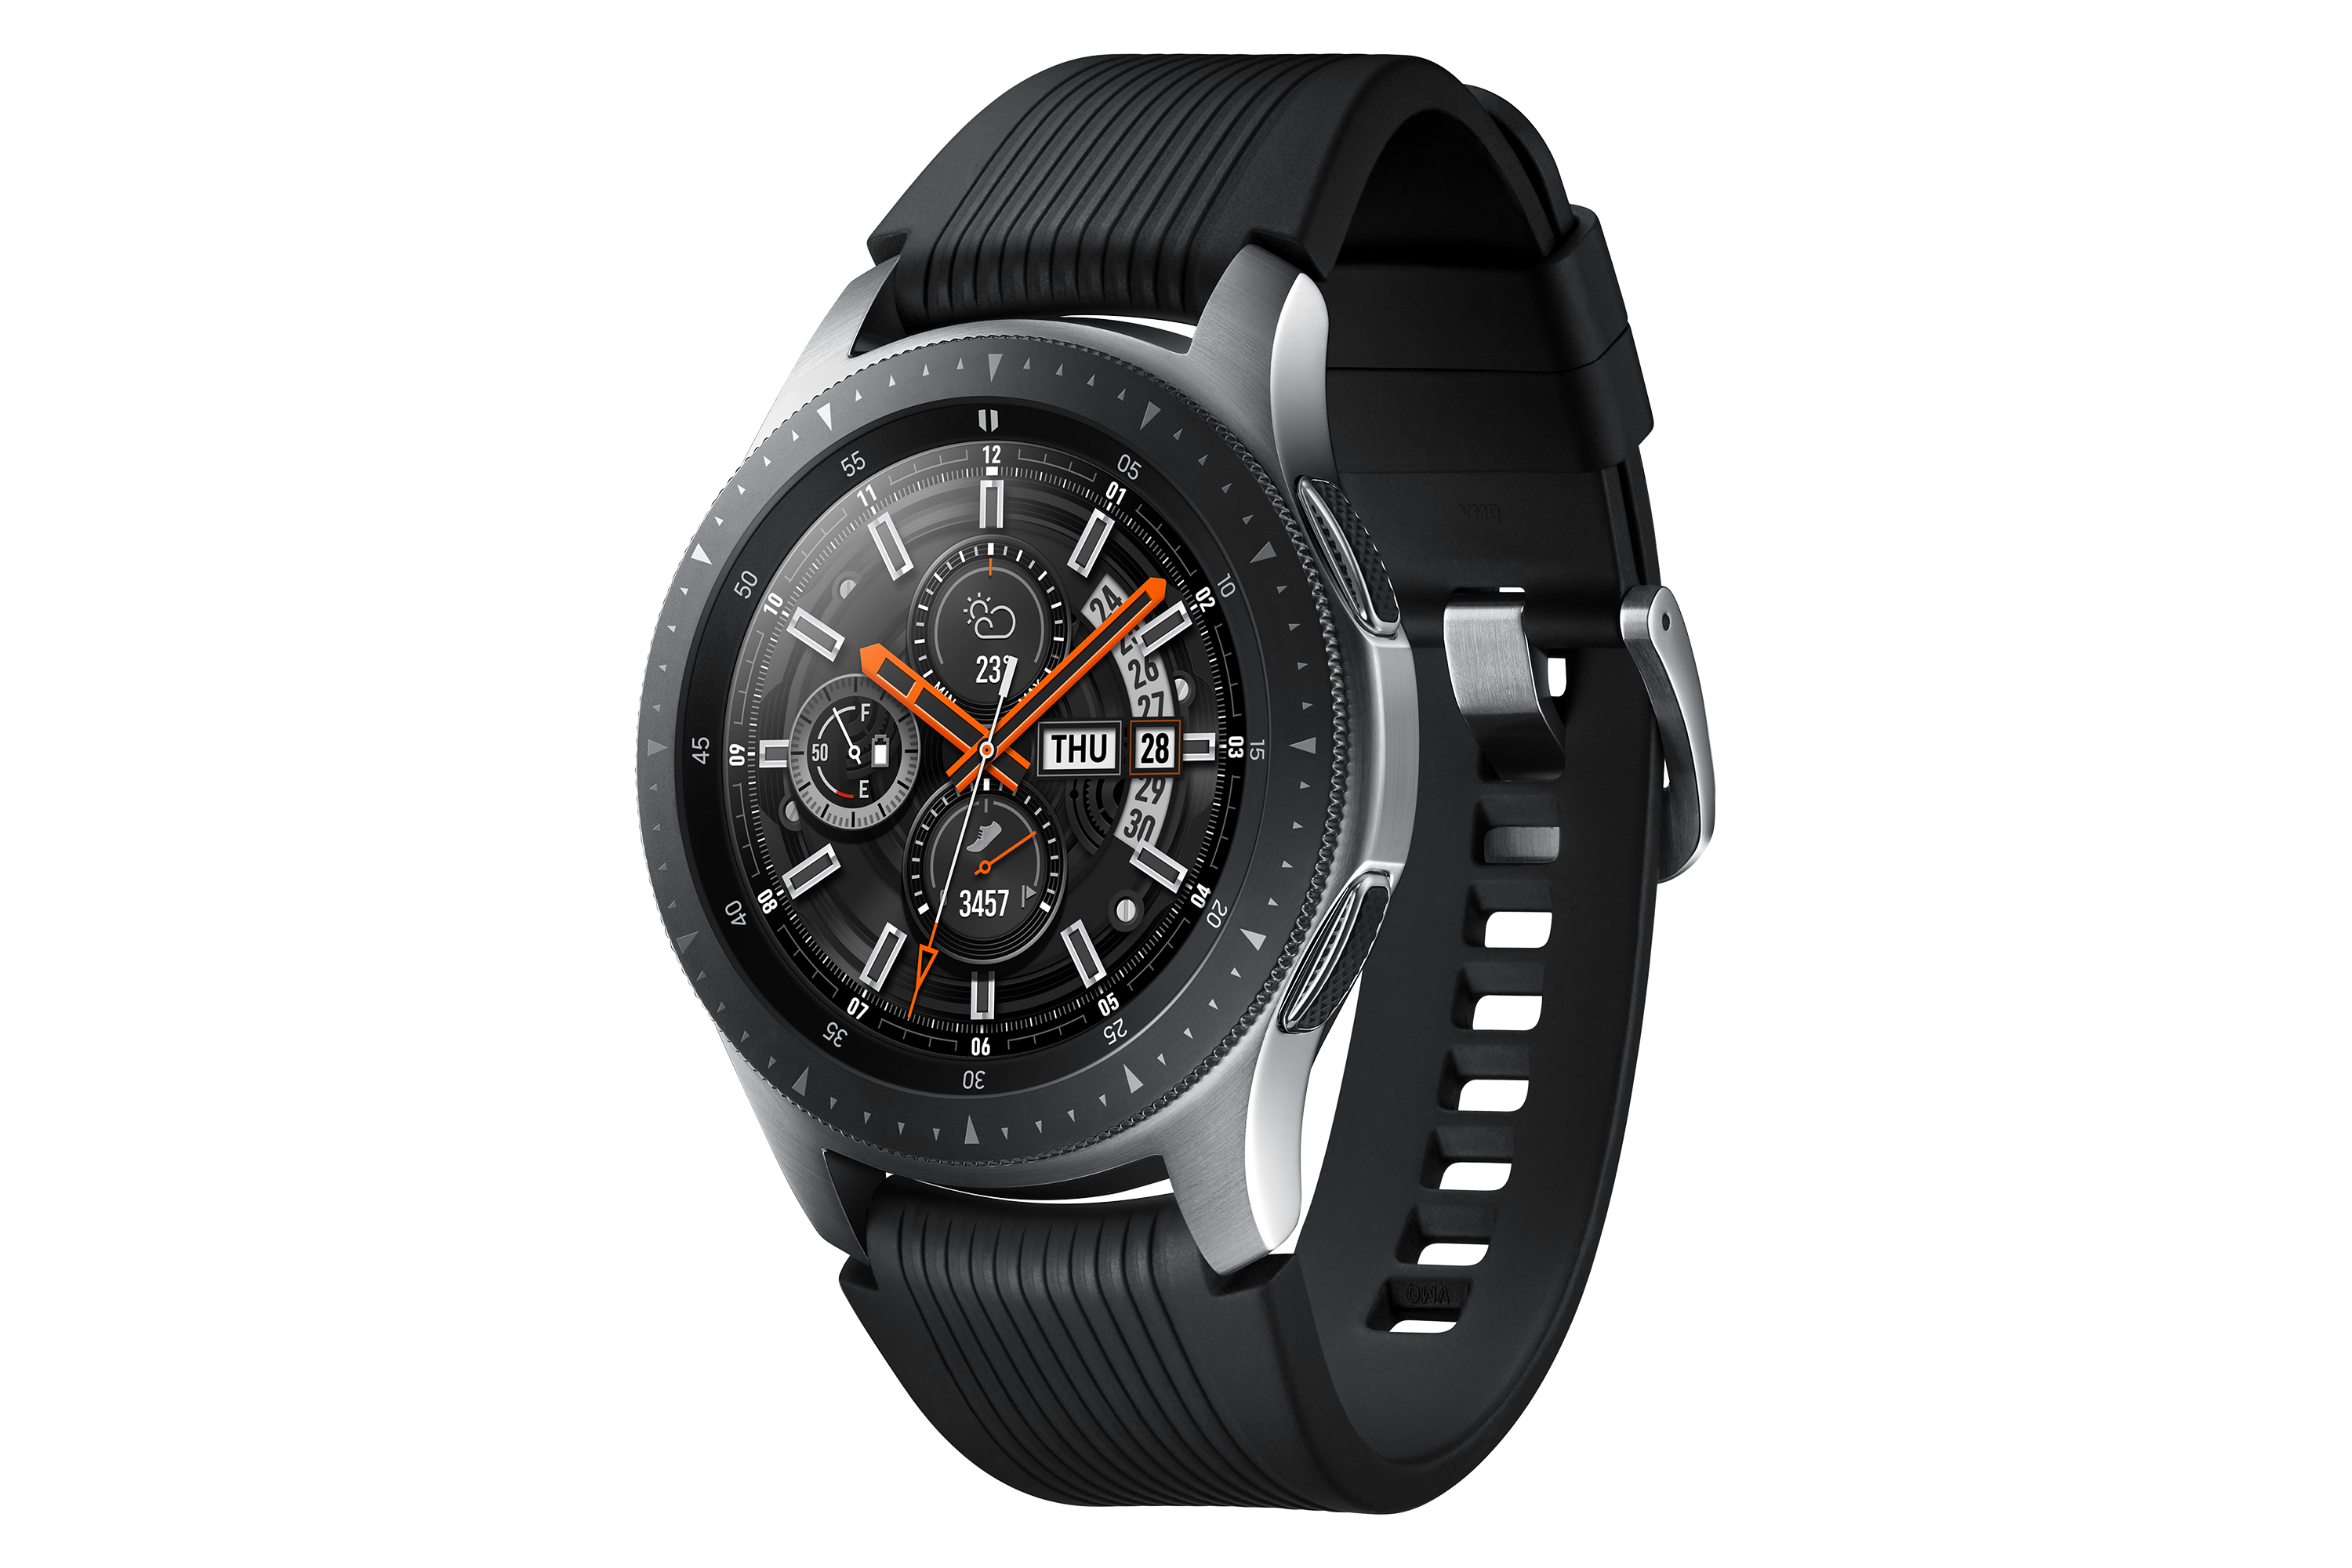 Galaxy watch r810. Samsung Galaxy watch SM-r800. Samsung Galaxy watch SM-r800 46mm. Samsung Galaxy watch 46mm. Samsung Galaxy watch 4 46mm.